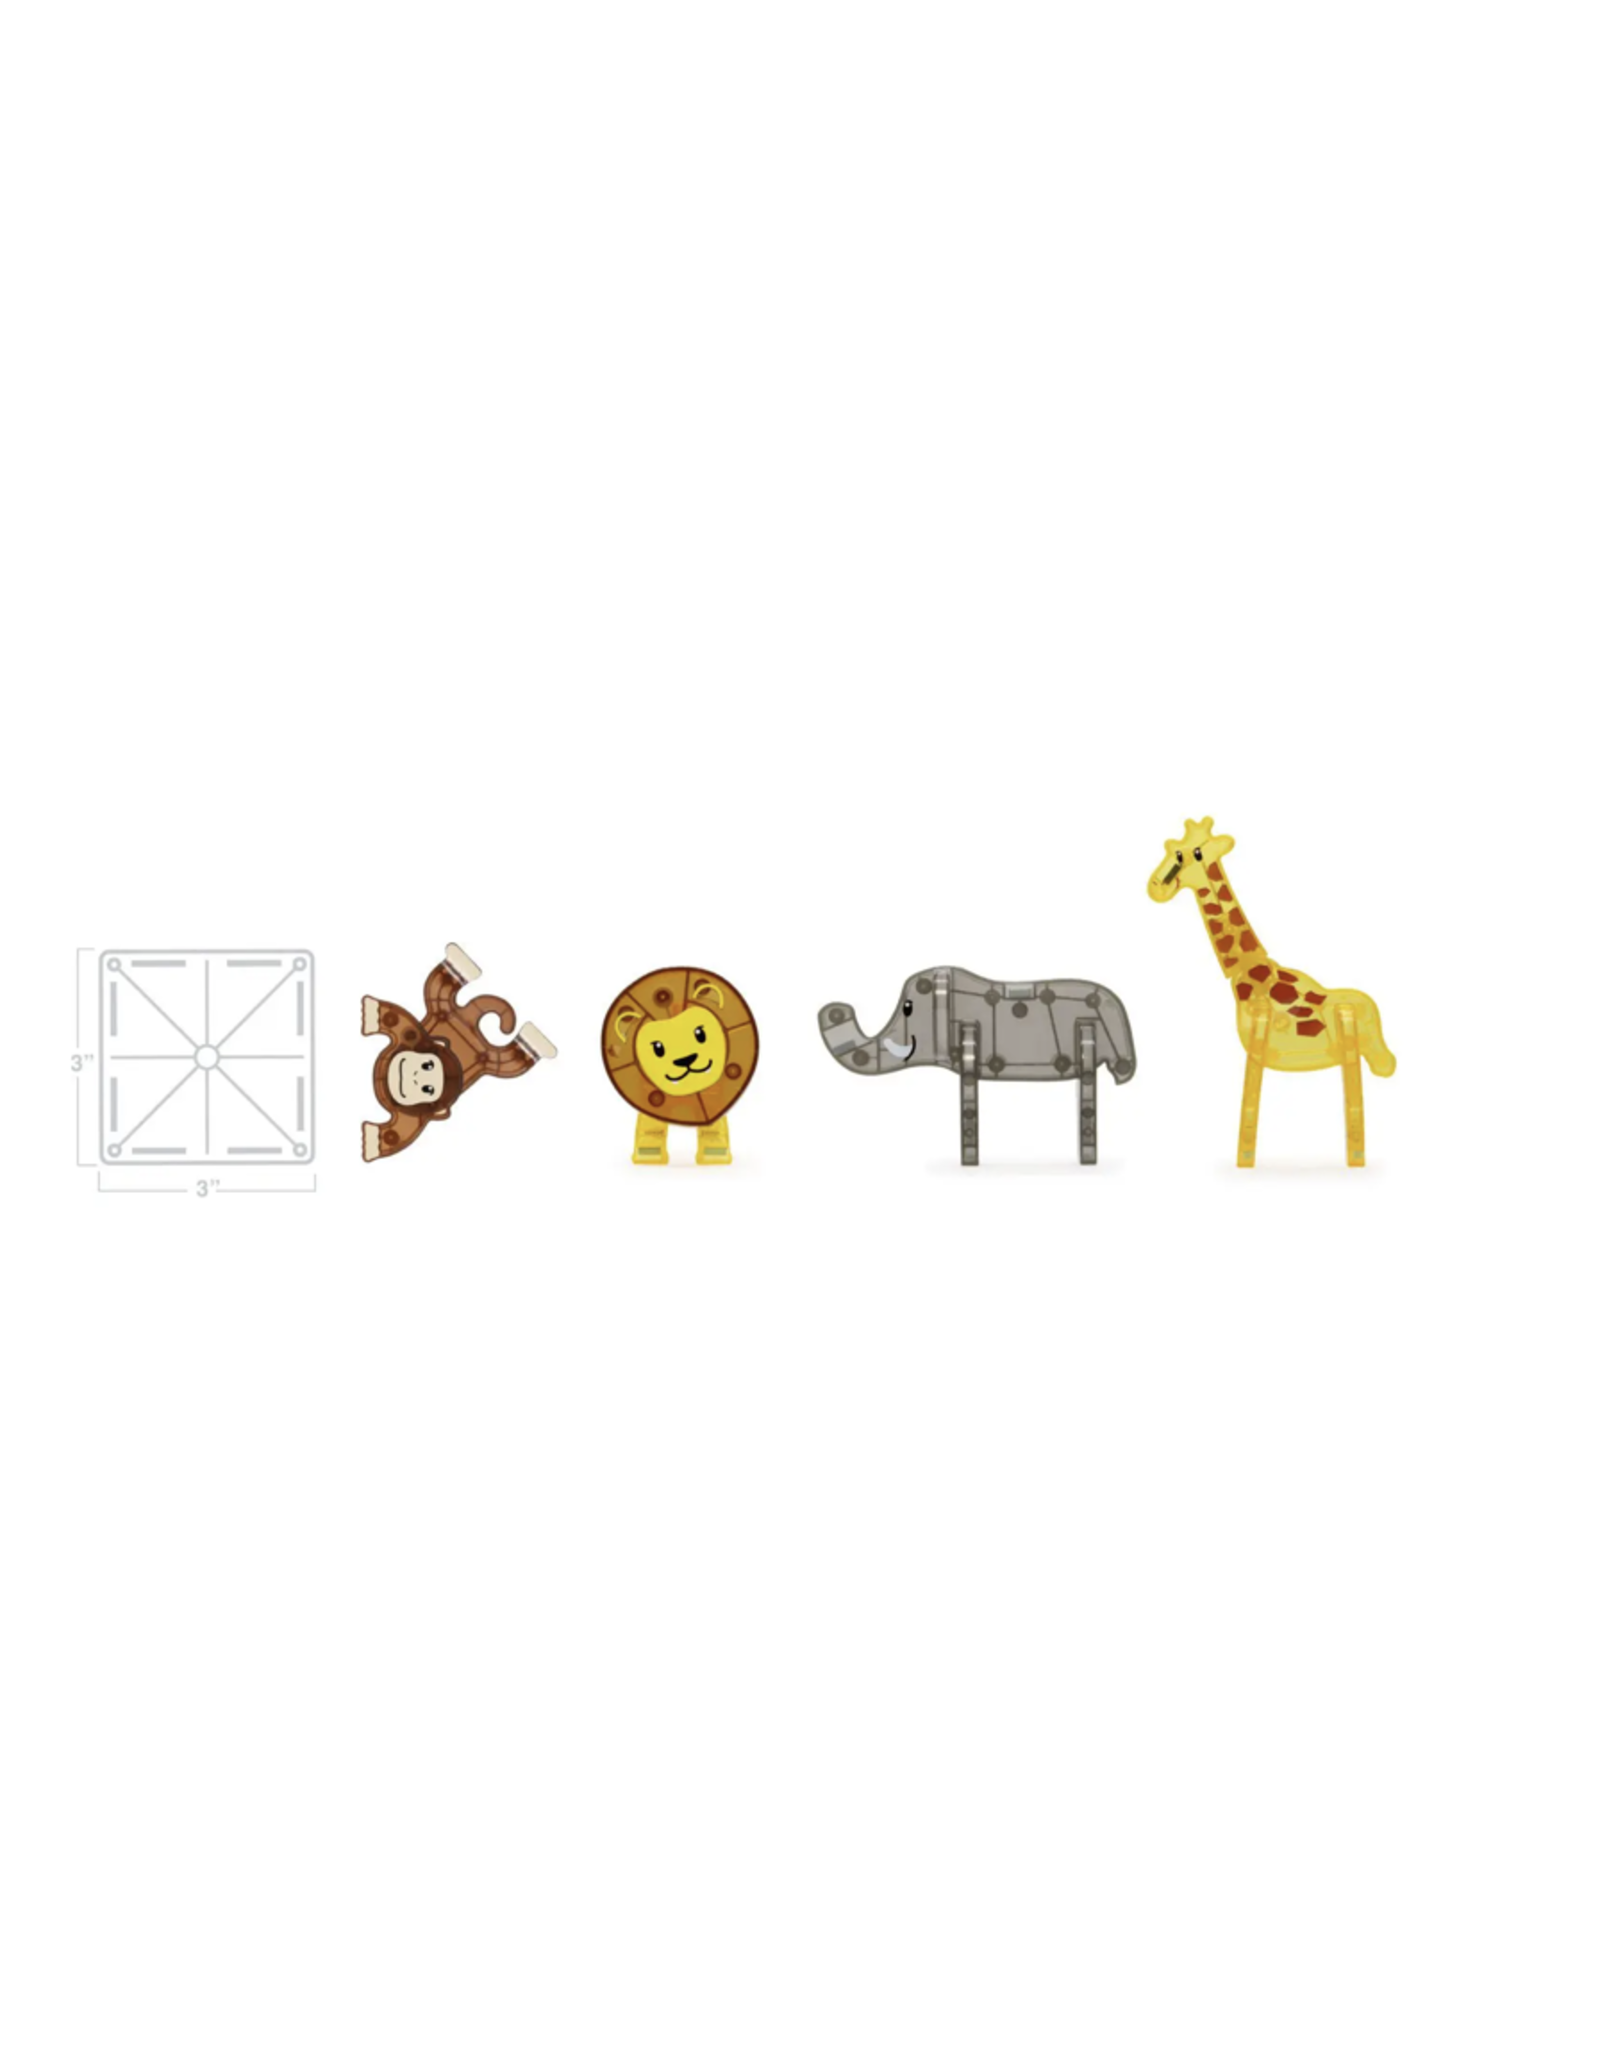 Maison Colette Magna Tiles Safari Animals 25 stuks